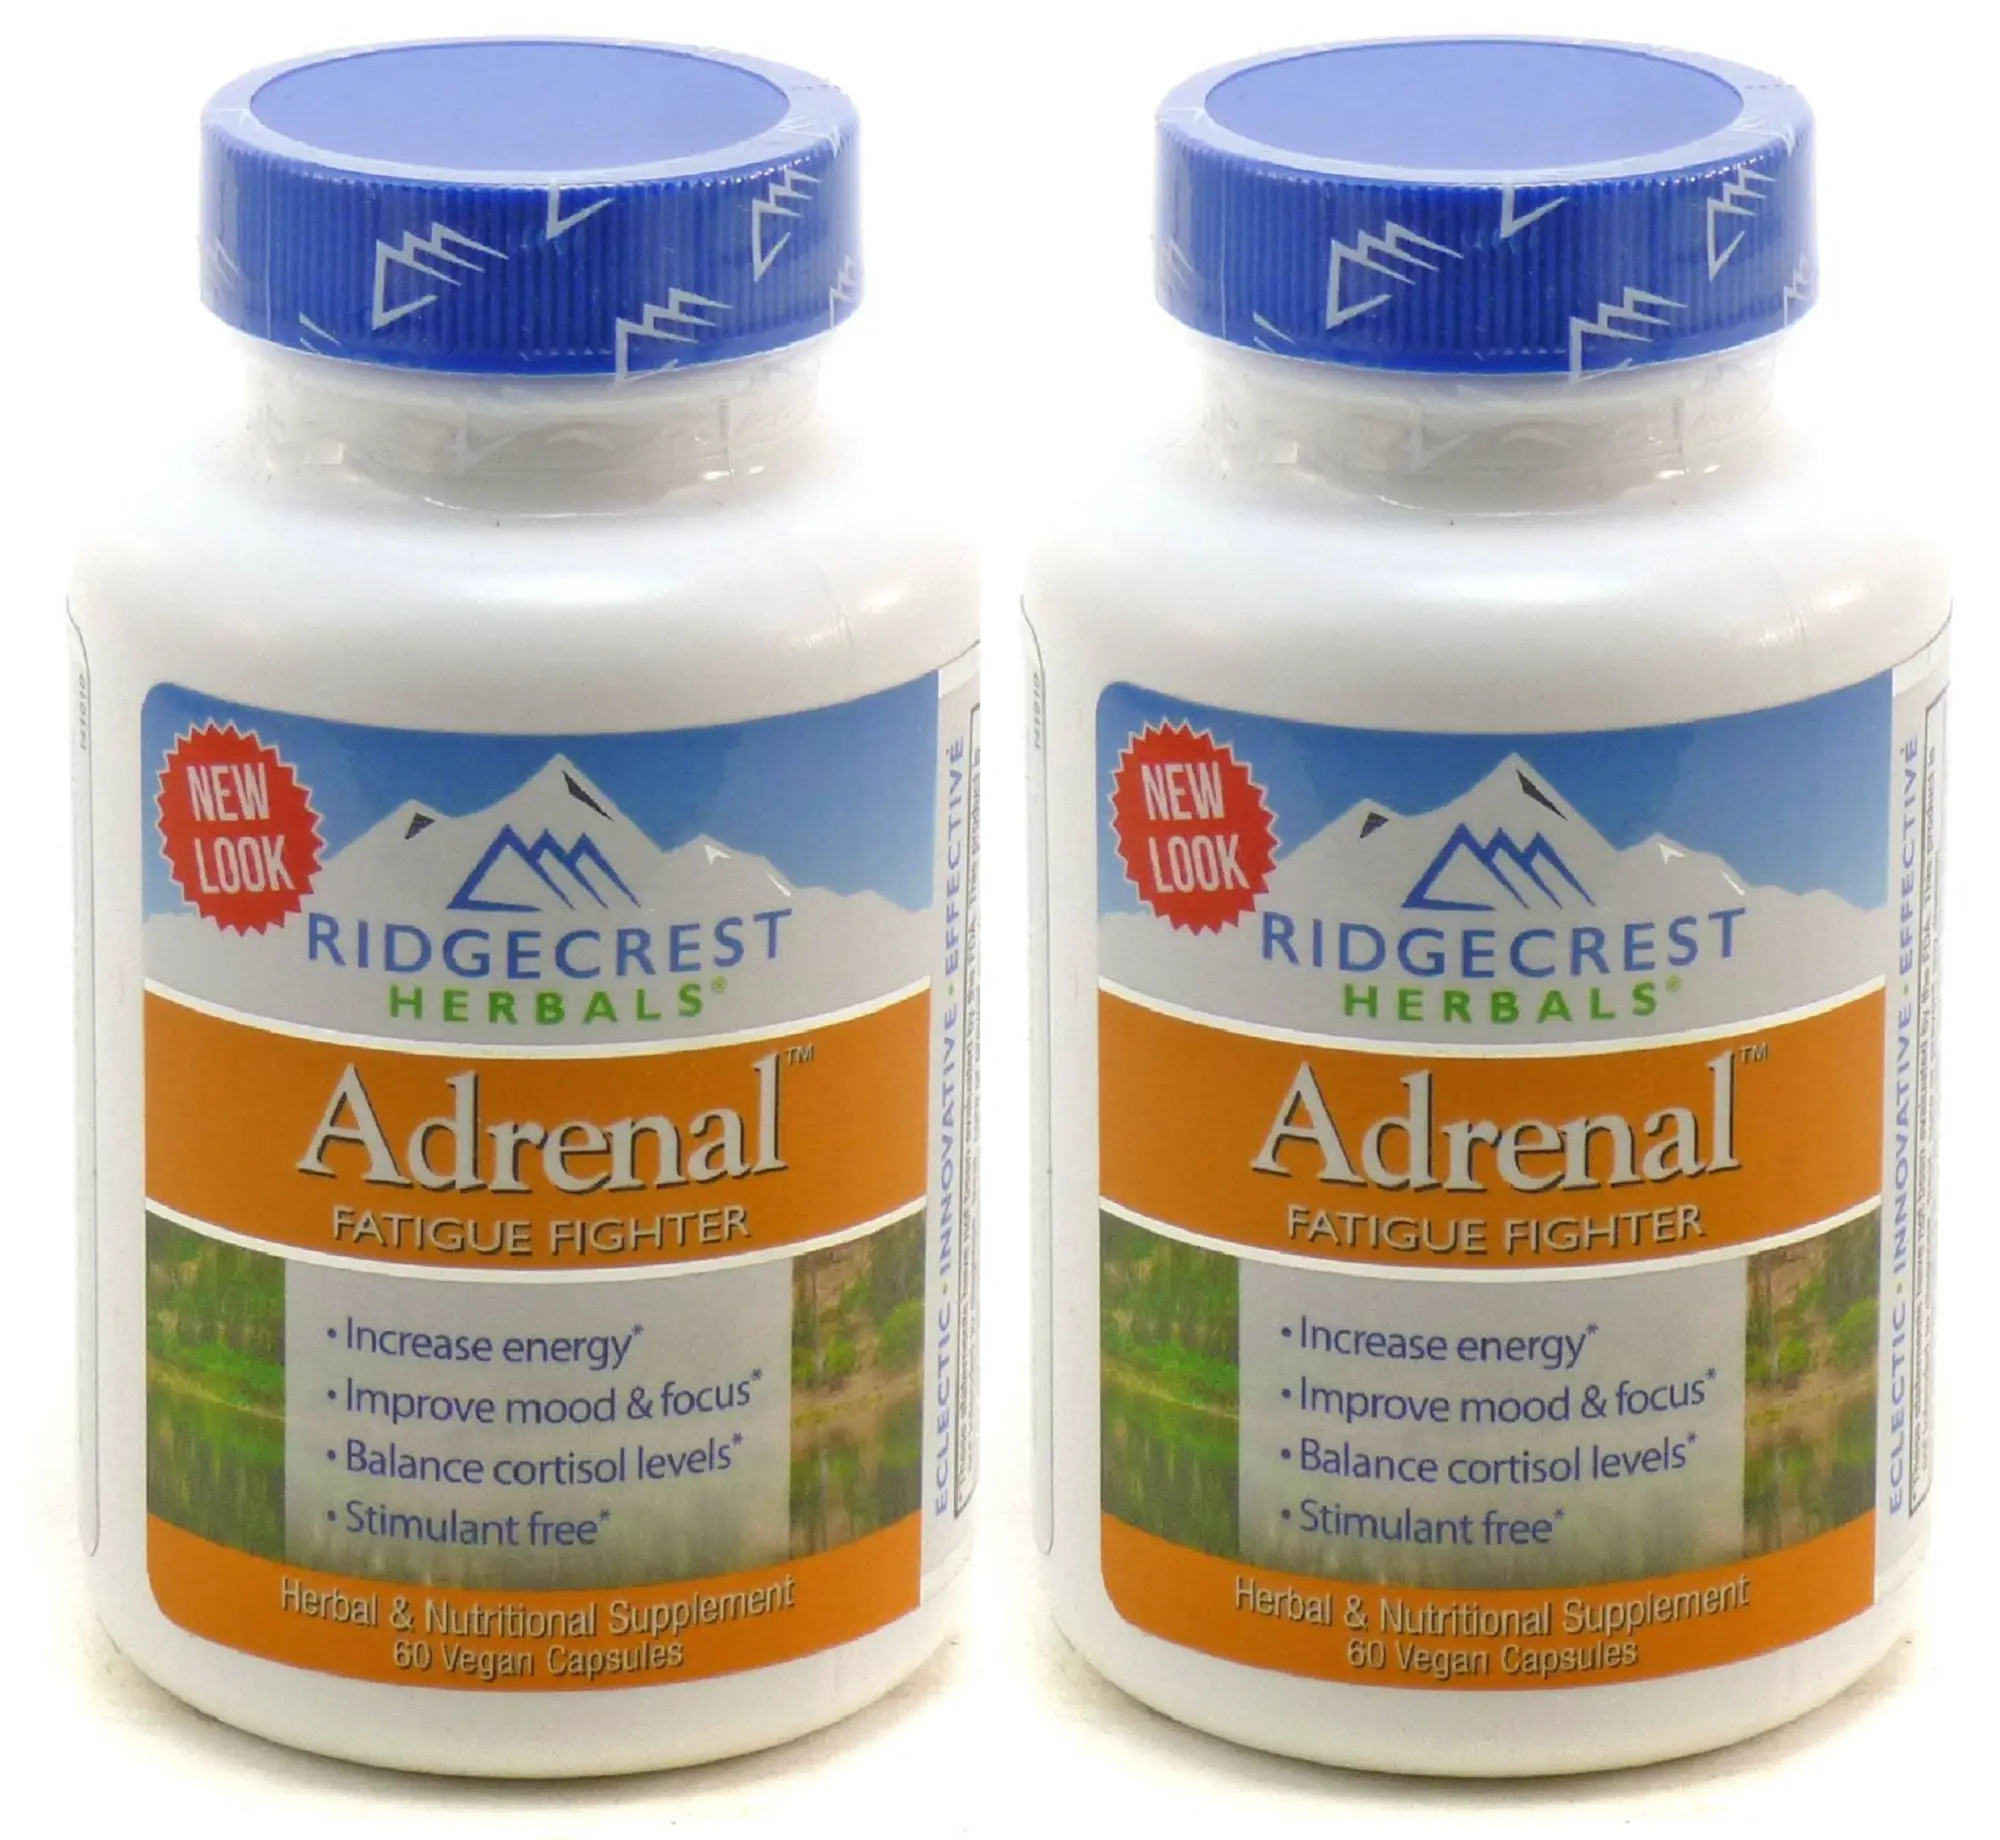 RidgeCrest Herbals Adrenal Fatigue Fighter